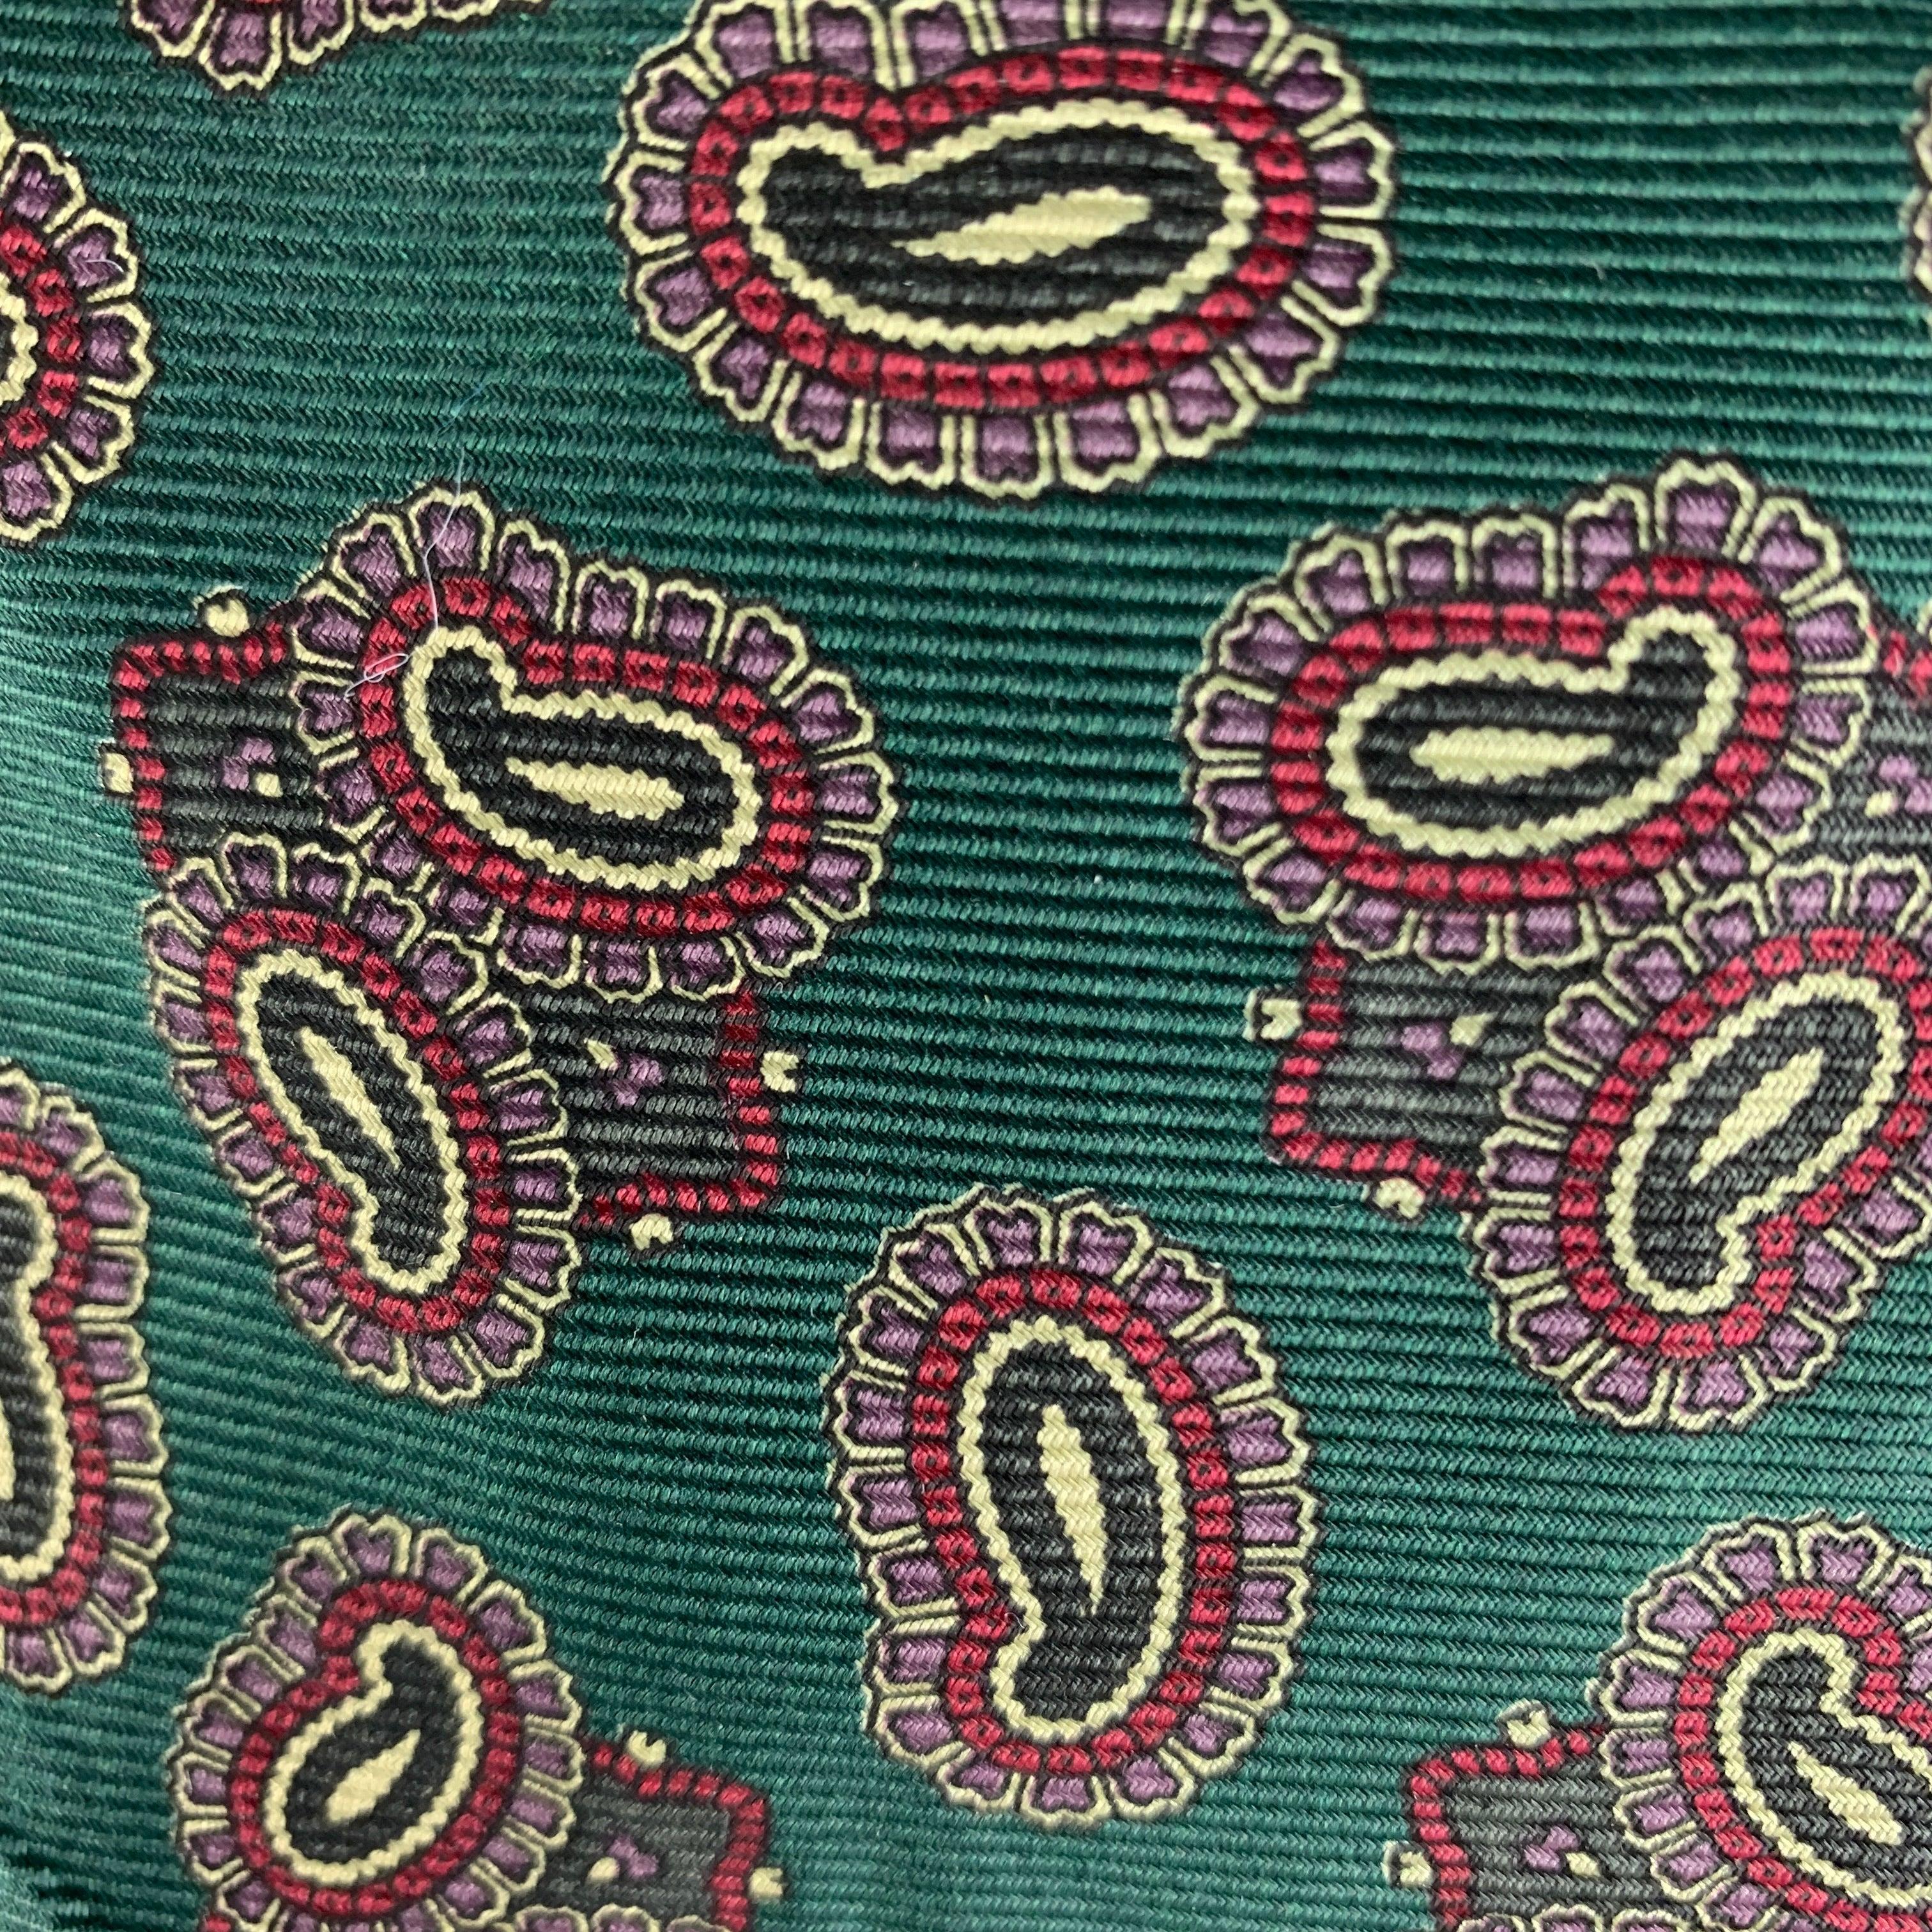 Klassische Krawatte von POLO by RALPH LAUREN in Waldgrün mit burgunderrotem Paisleymuster. 100% Seide. Handgefertigt in den U.S.A.
Sehr guter gebrauchter Zustand.
 

Abmessungen: 
  Breite: 3 Zoll Länge: 55 Zoll 



  
  
 
Referenz: